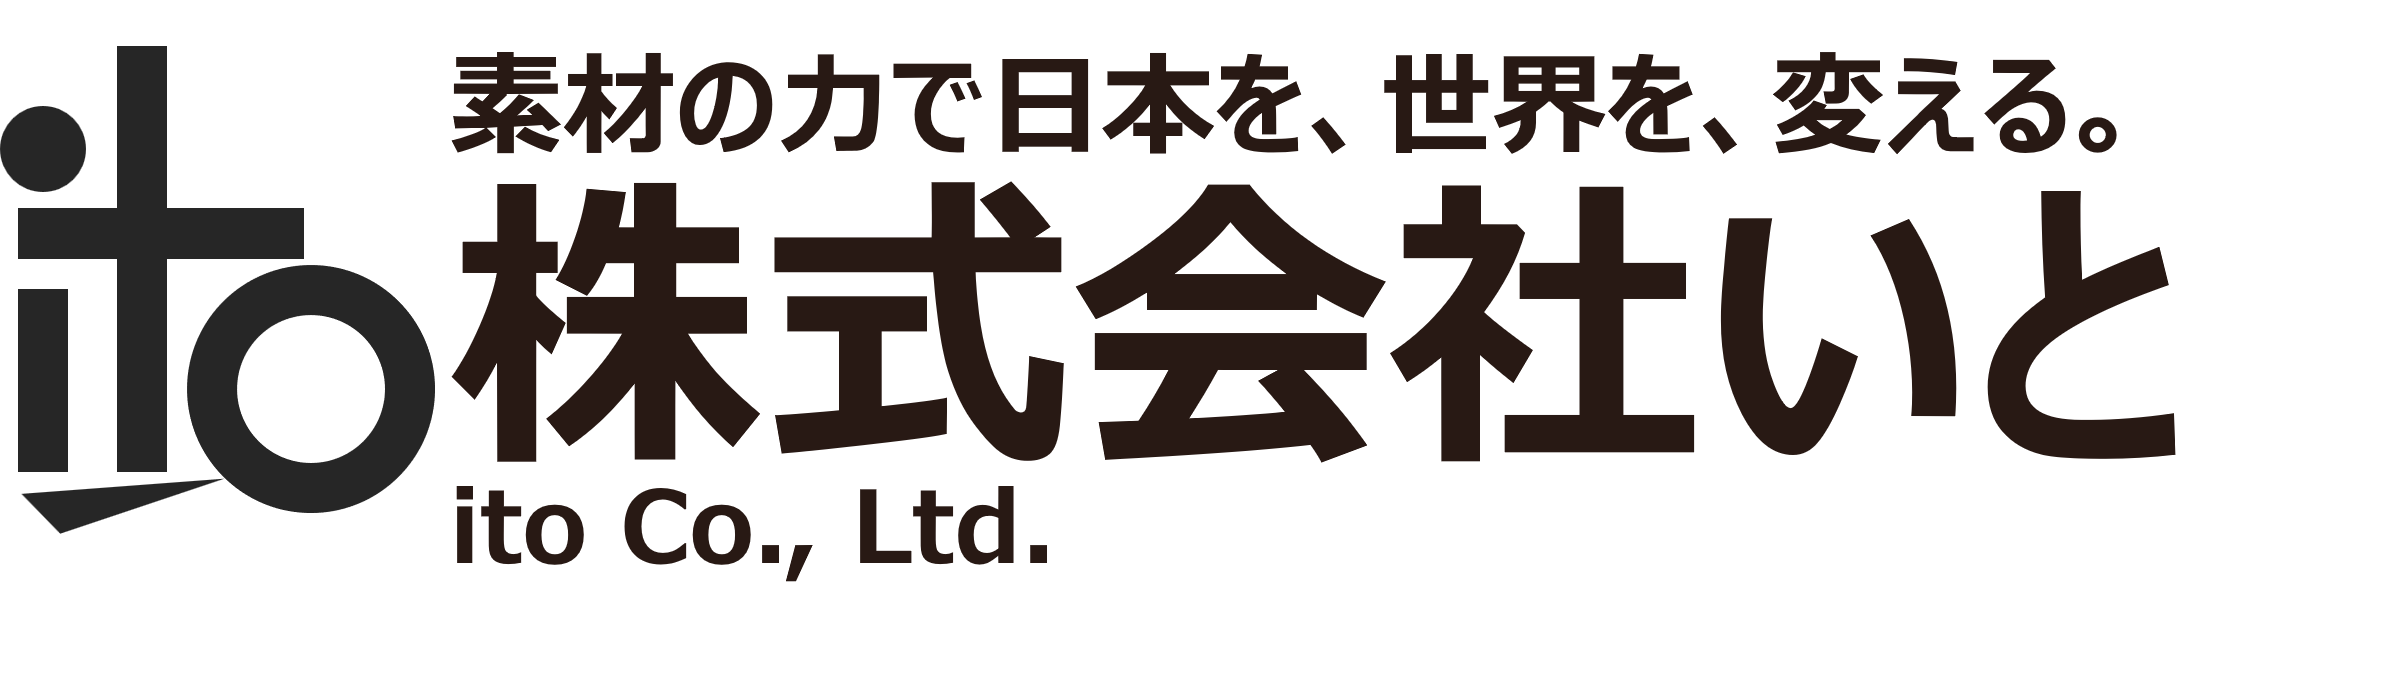 ito Co., Ltd.